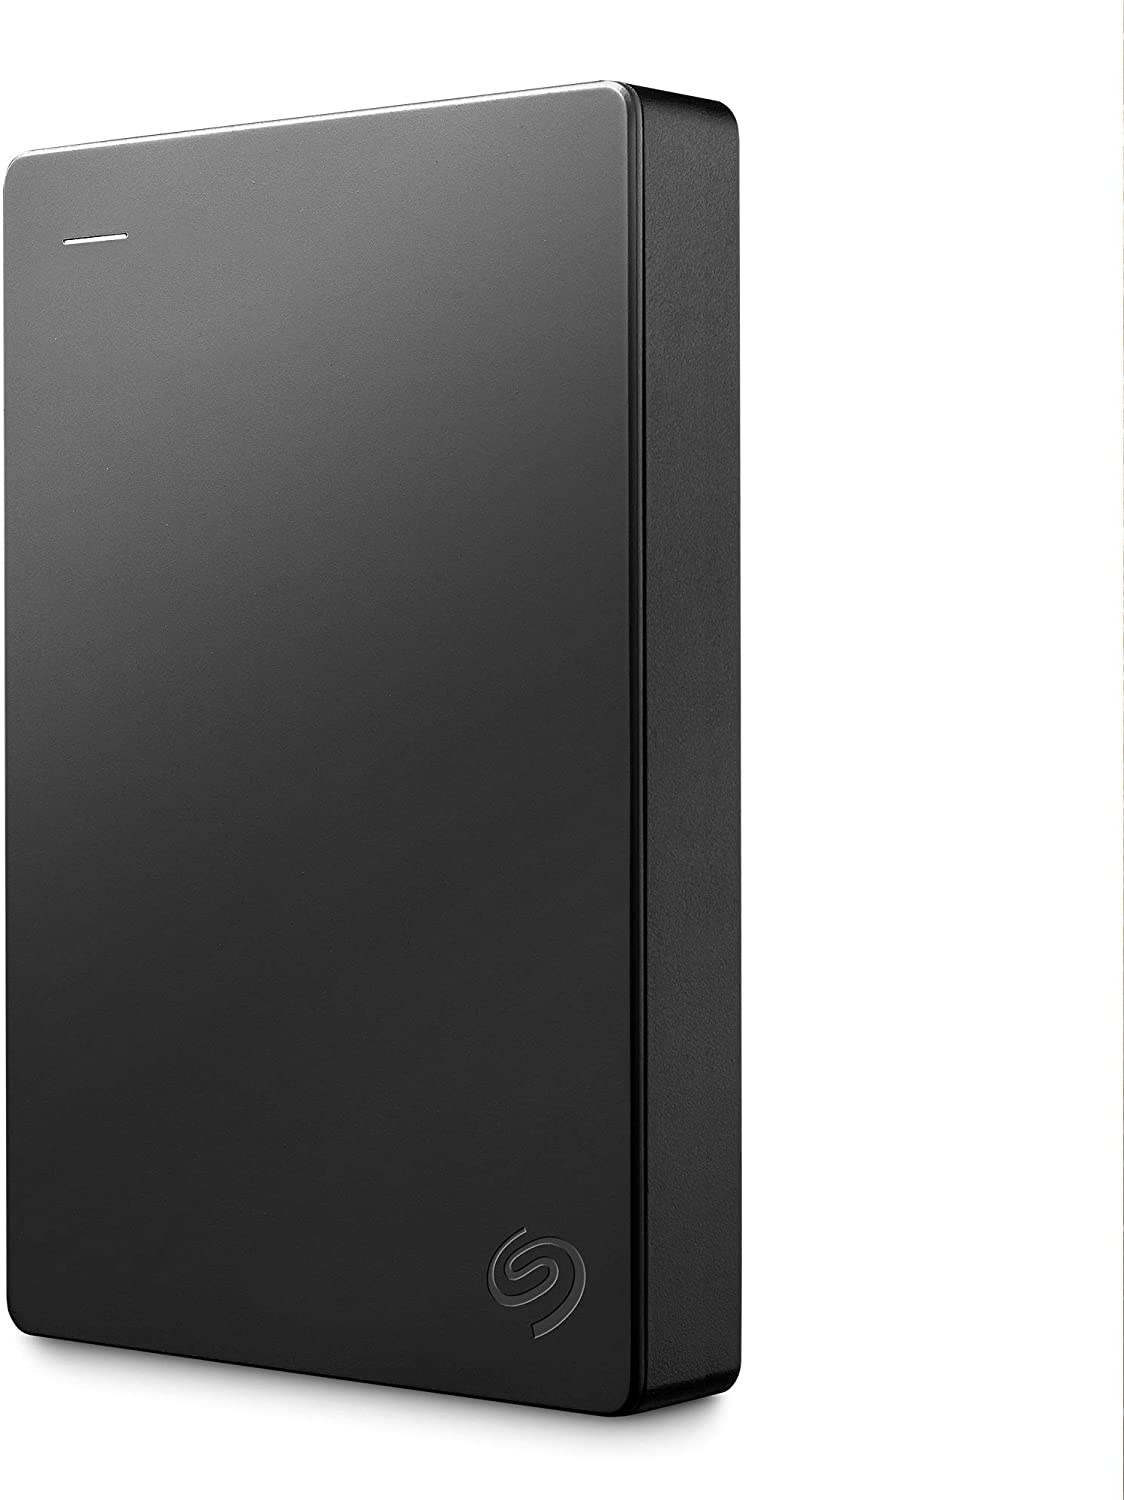 Bild zu Amazon.es: 2,5 Zoll externe Festplatte Seagate Portable Drive STGX4000400 (4 TB) für 73,09€ (Vergleich: 89,99€)